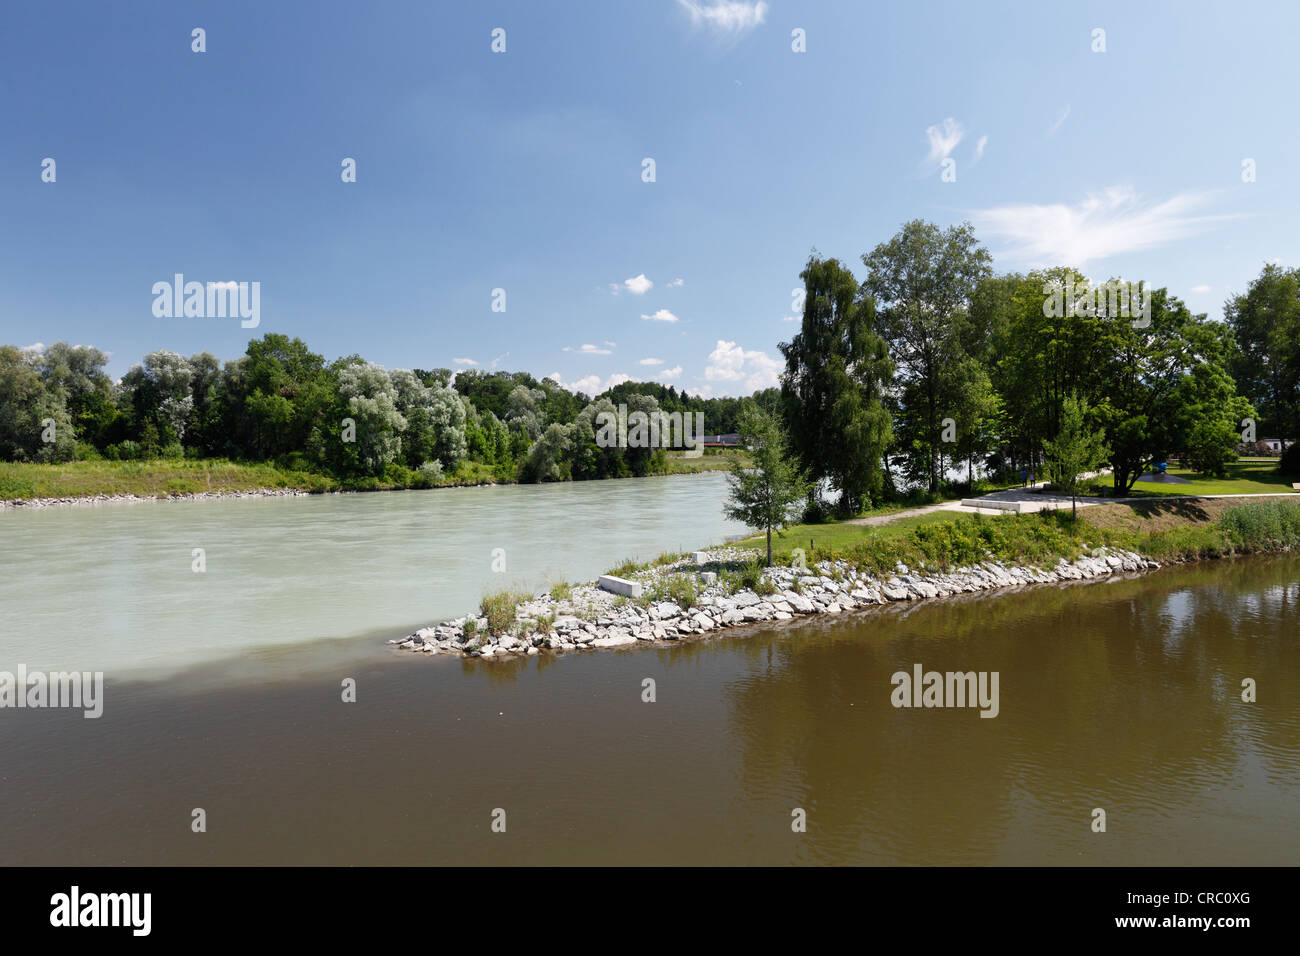 River Mangfall, à l'avant, se joint à la rivière Inn, Innspitz, Rosenheim, Bavière, Allemagne, Europe Banque D'Images